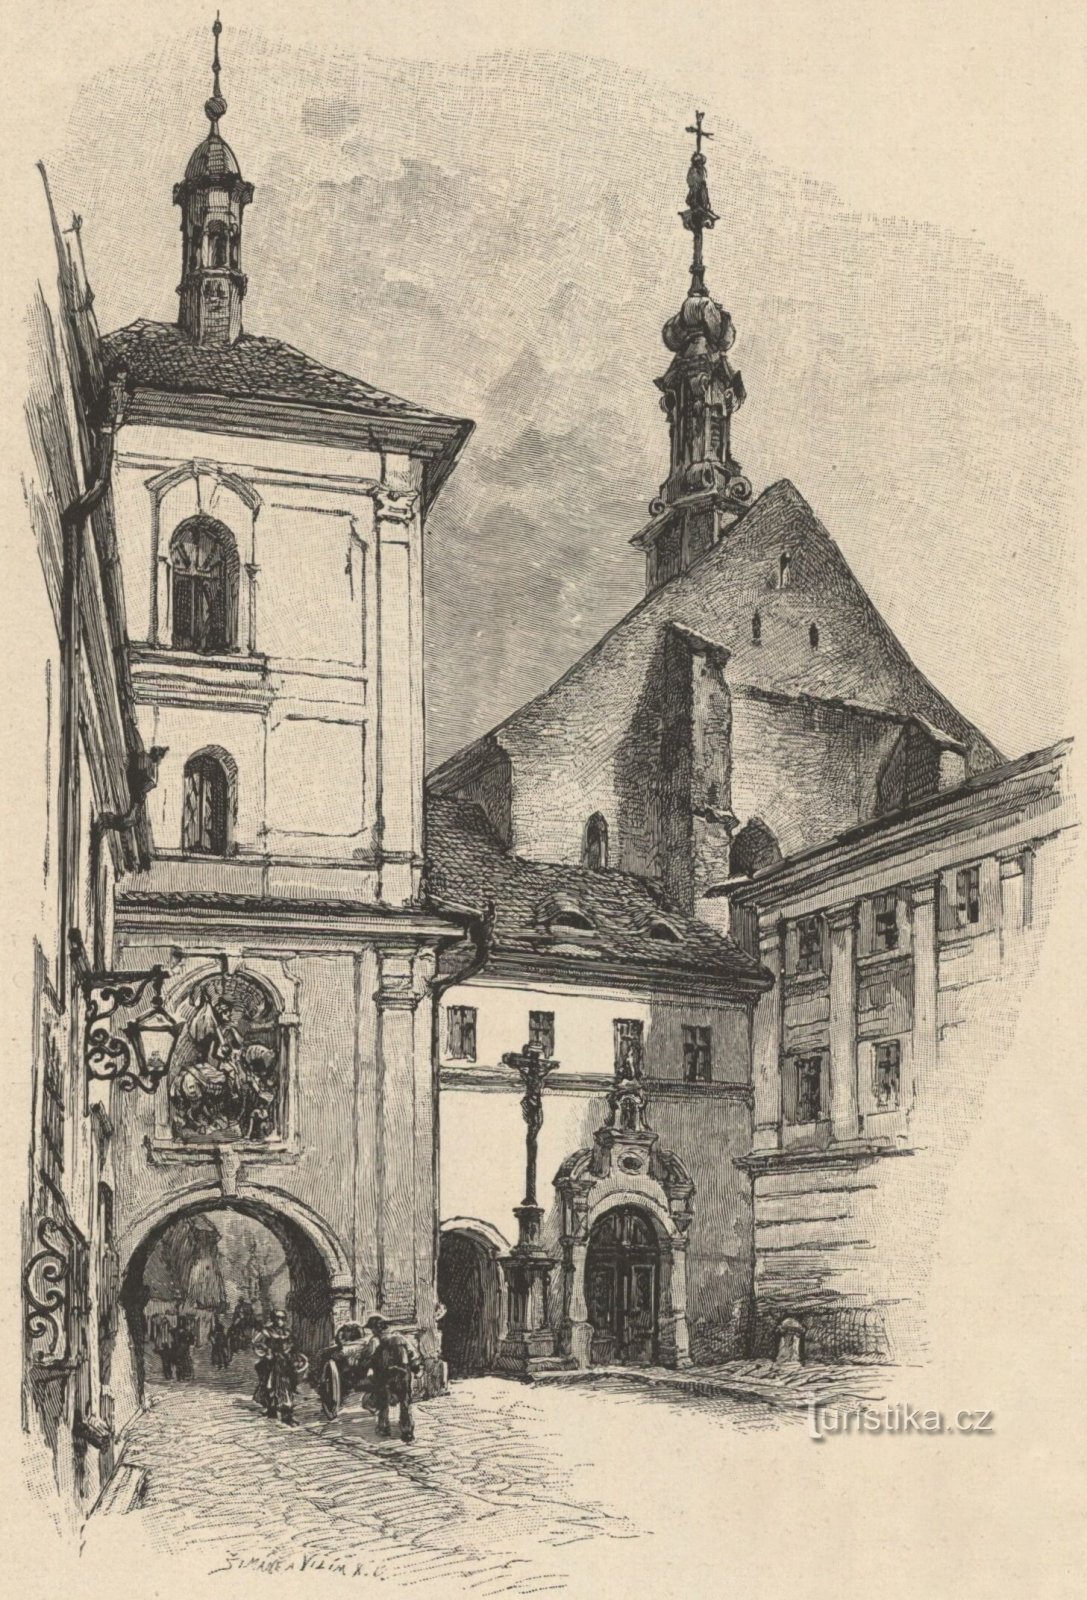 De stadspoort met de klokkentoren en de kerk van St. Nicholas, bisschop (Jaroměř, begin jaren 70